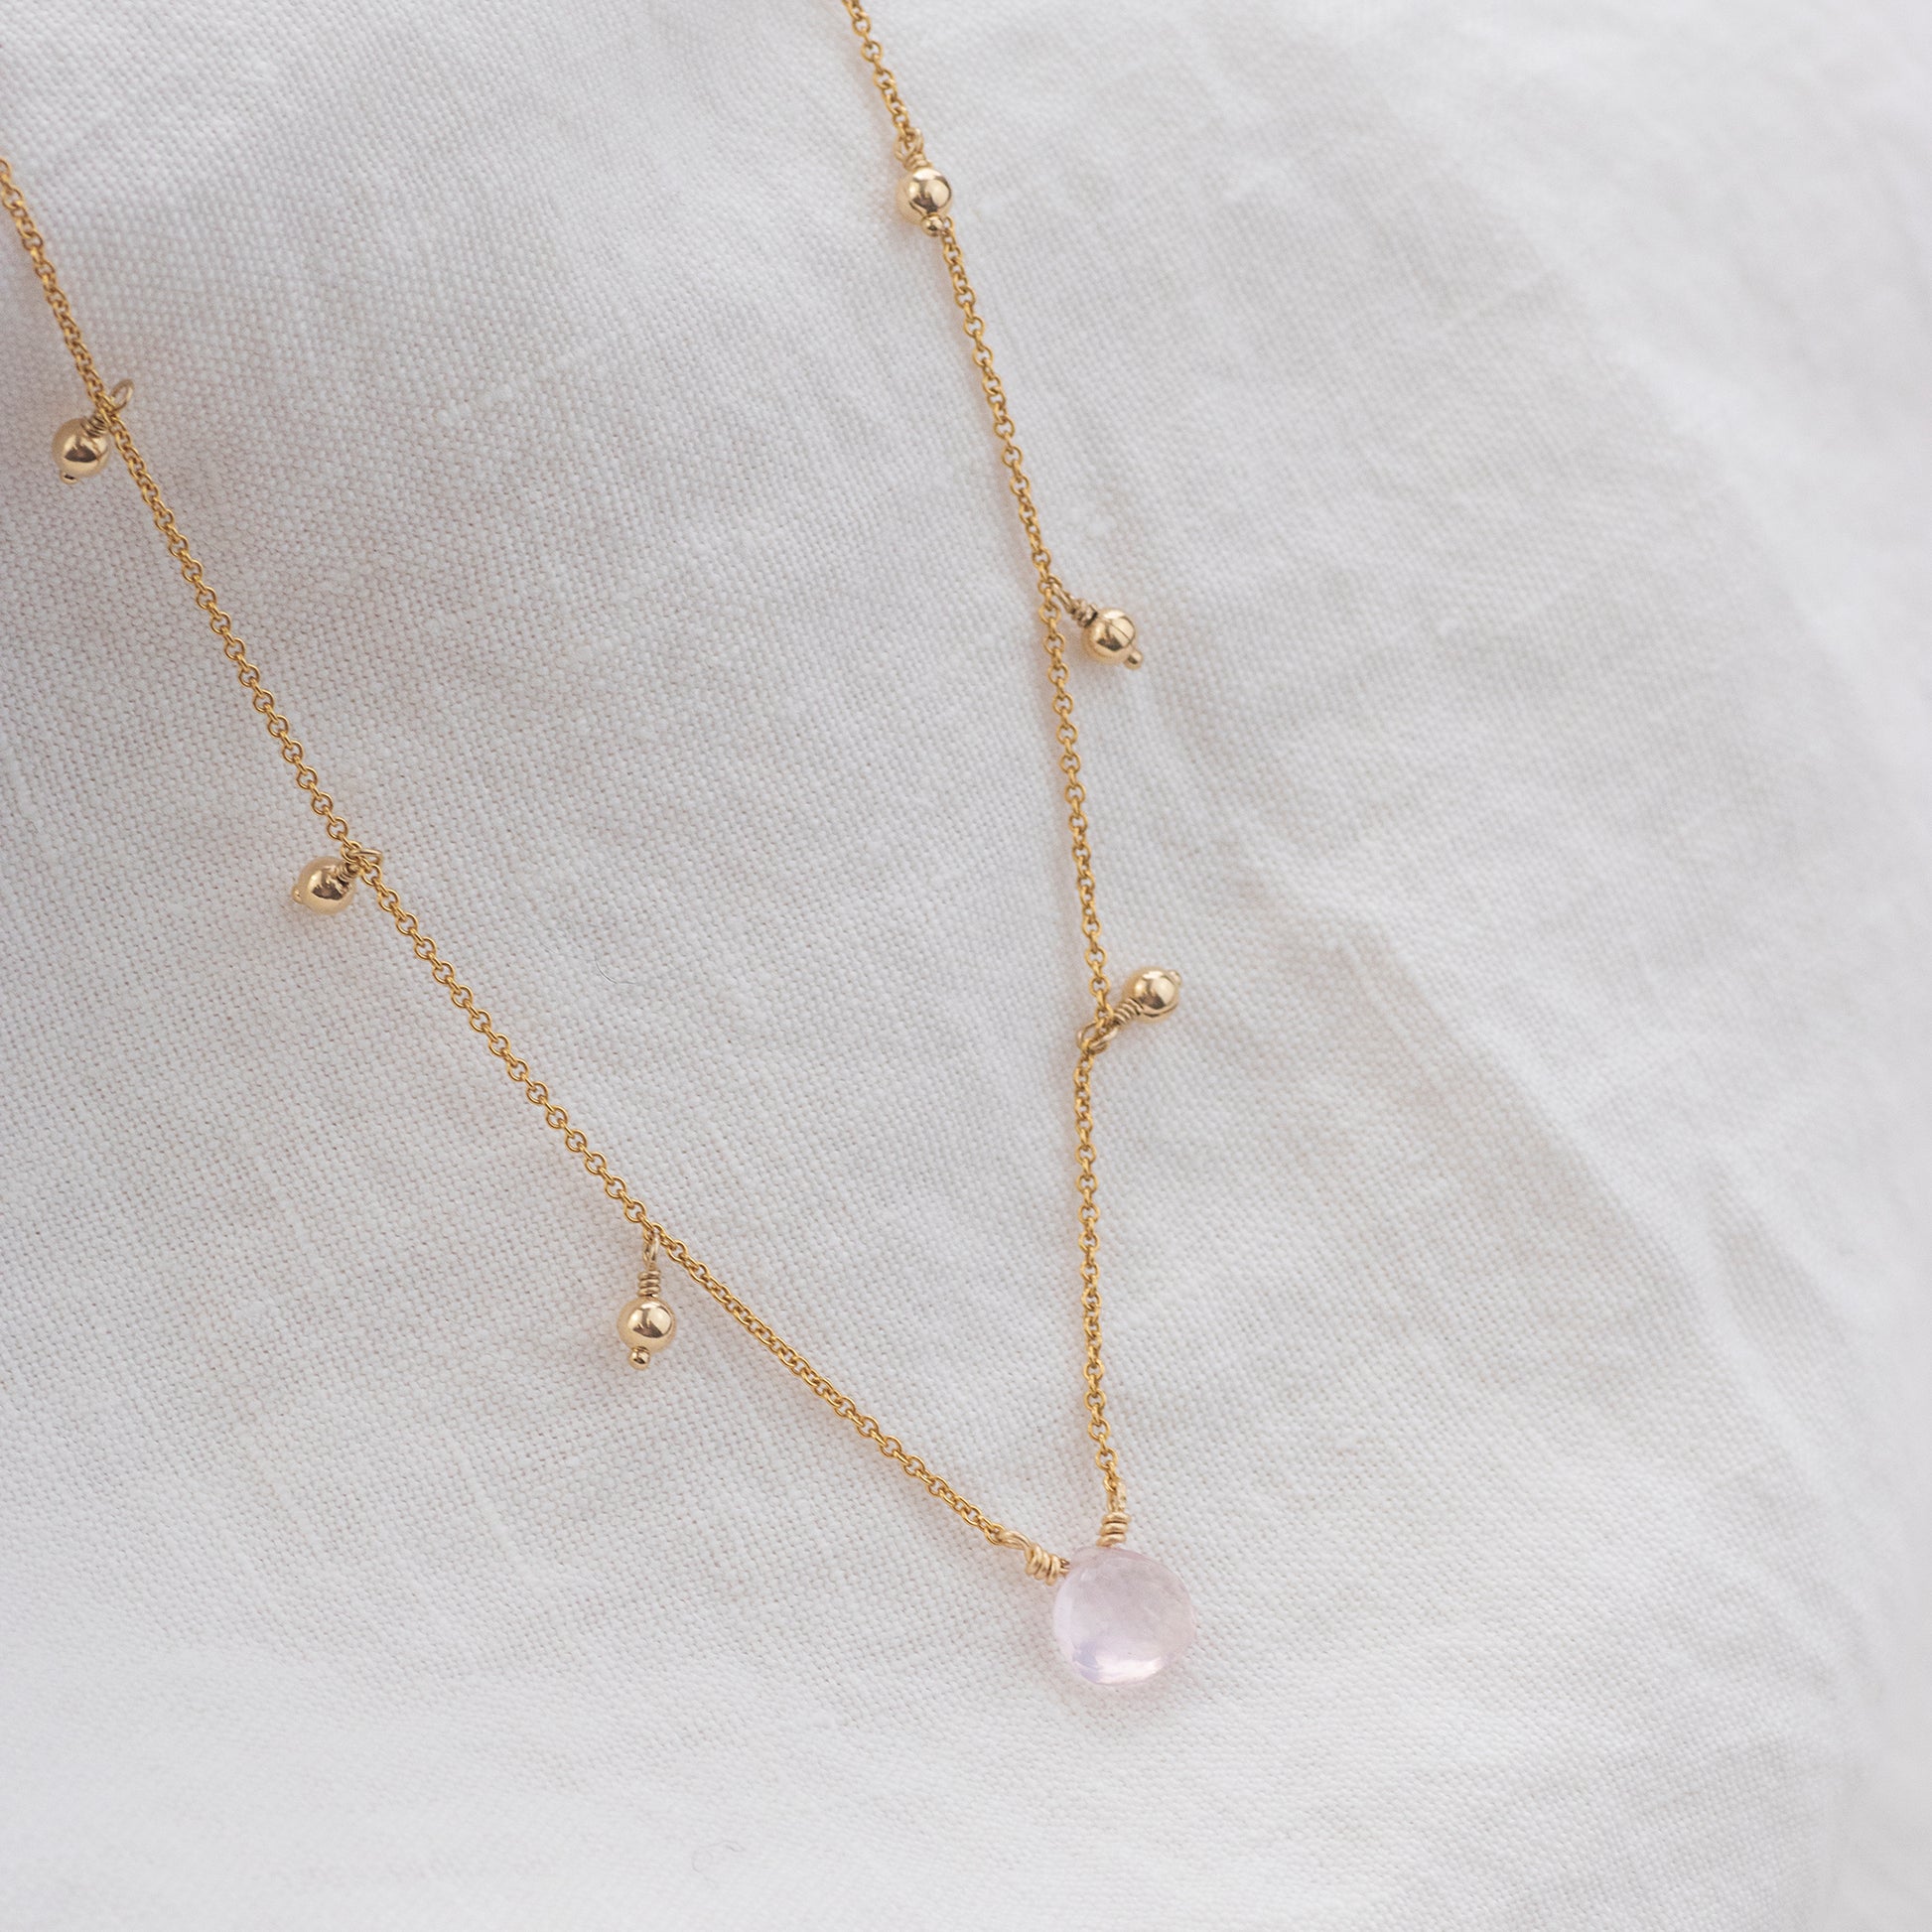 Rose Quartz Necklace - Unconditional love, Compassion & Calm